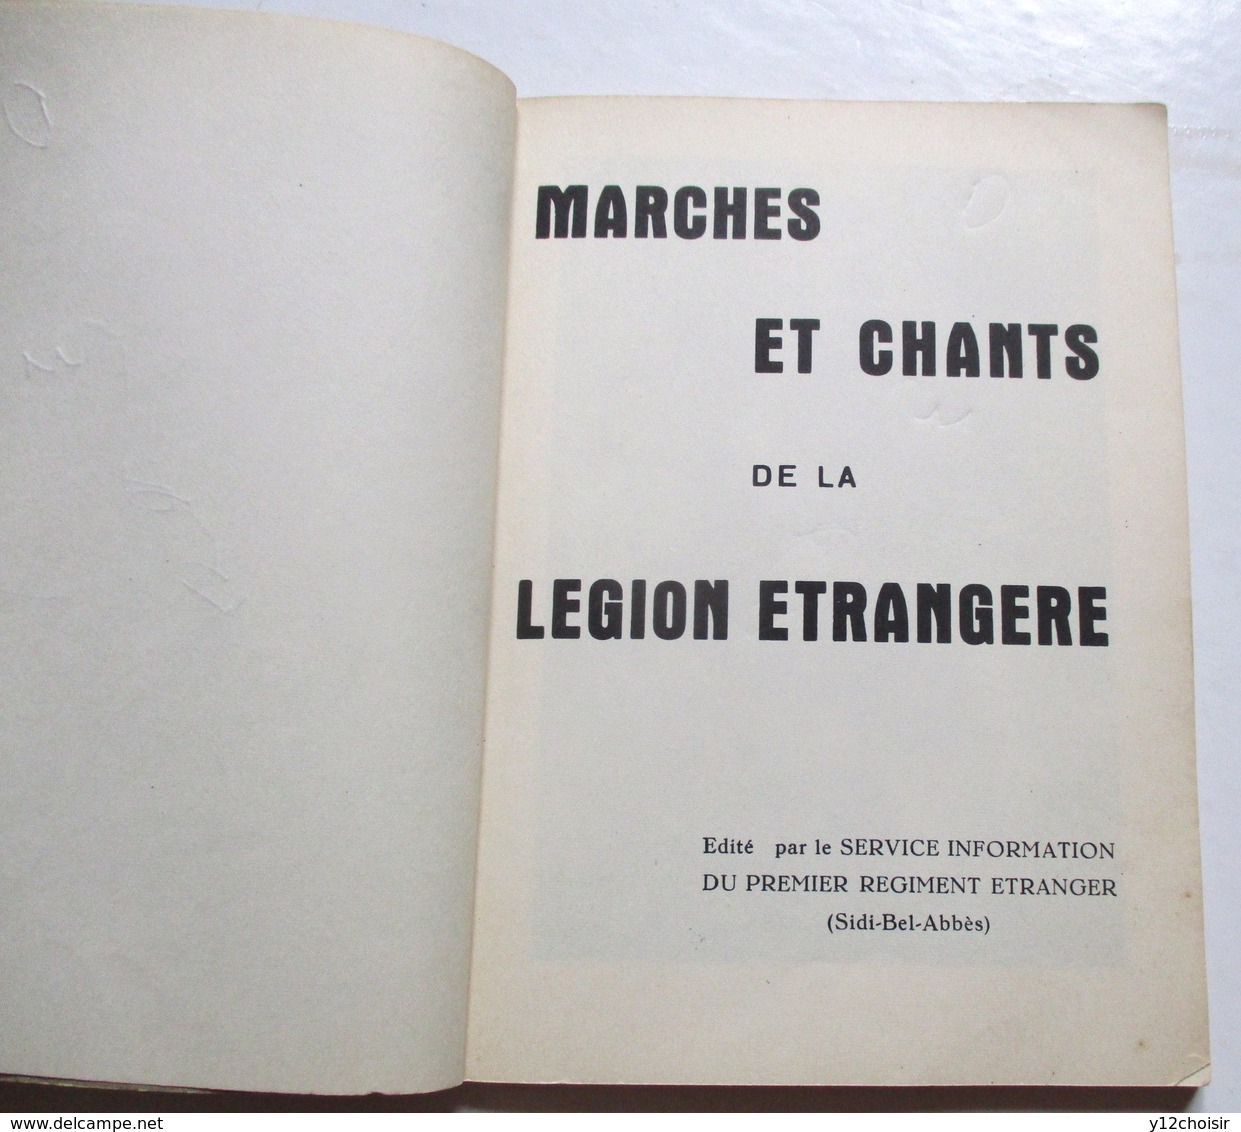 Marches Et Chants De La Légion Étrangère - Service Information Du Premier Régiment Etranger (Sidi-Bel-Abbès) - 1959 Képi - Français